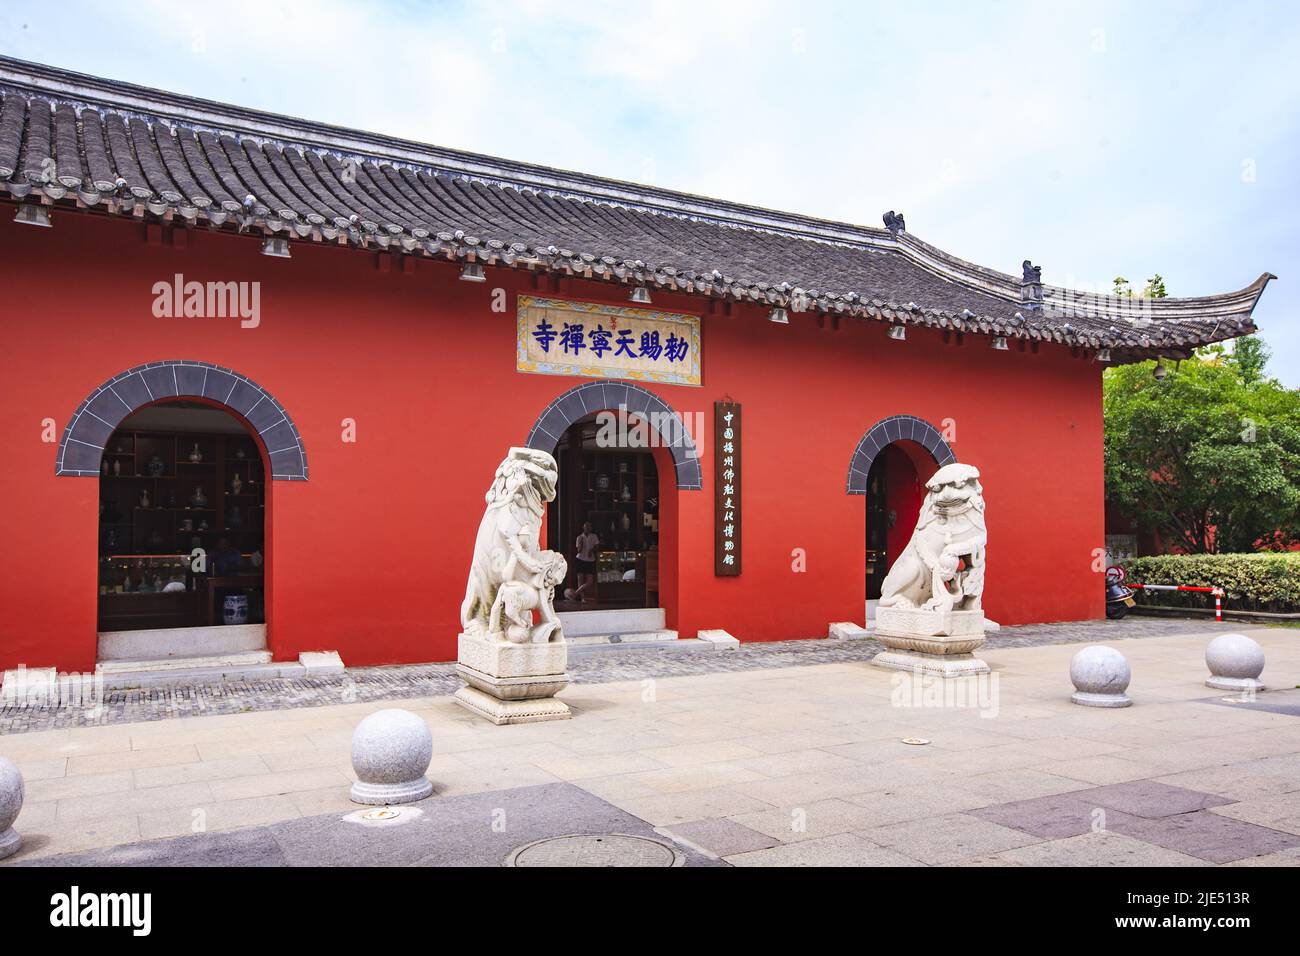 Jiangsu yangzhou day ning temple gate temple stone lions Stock Photo